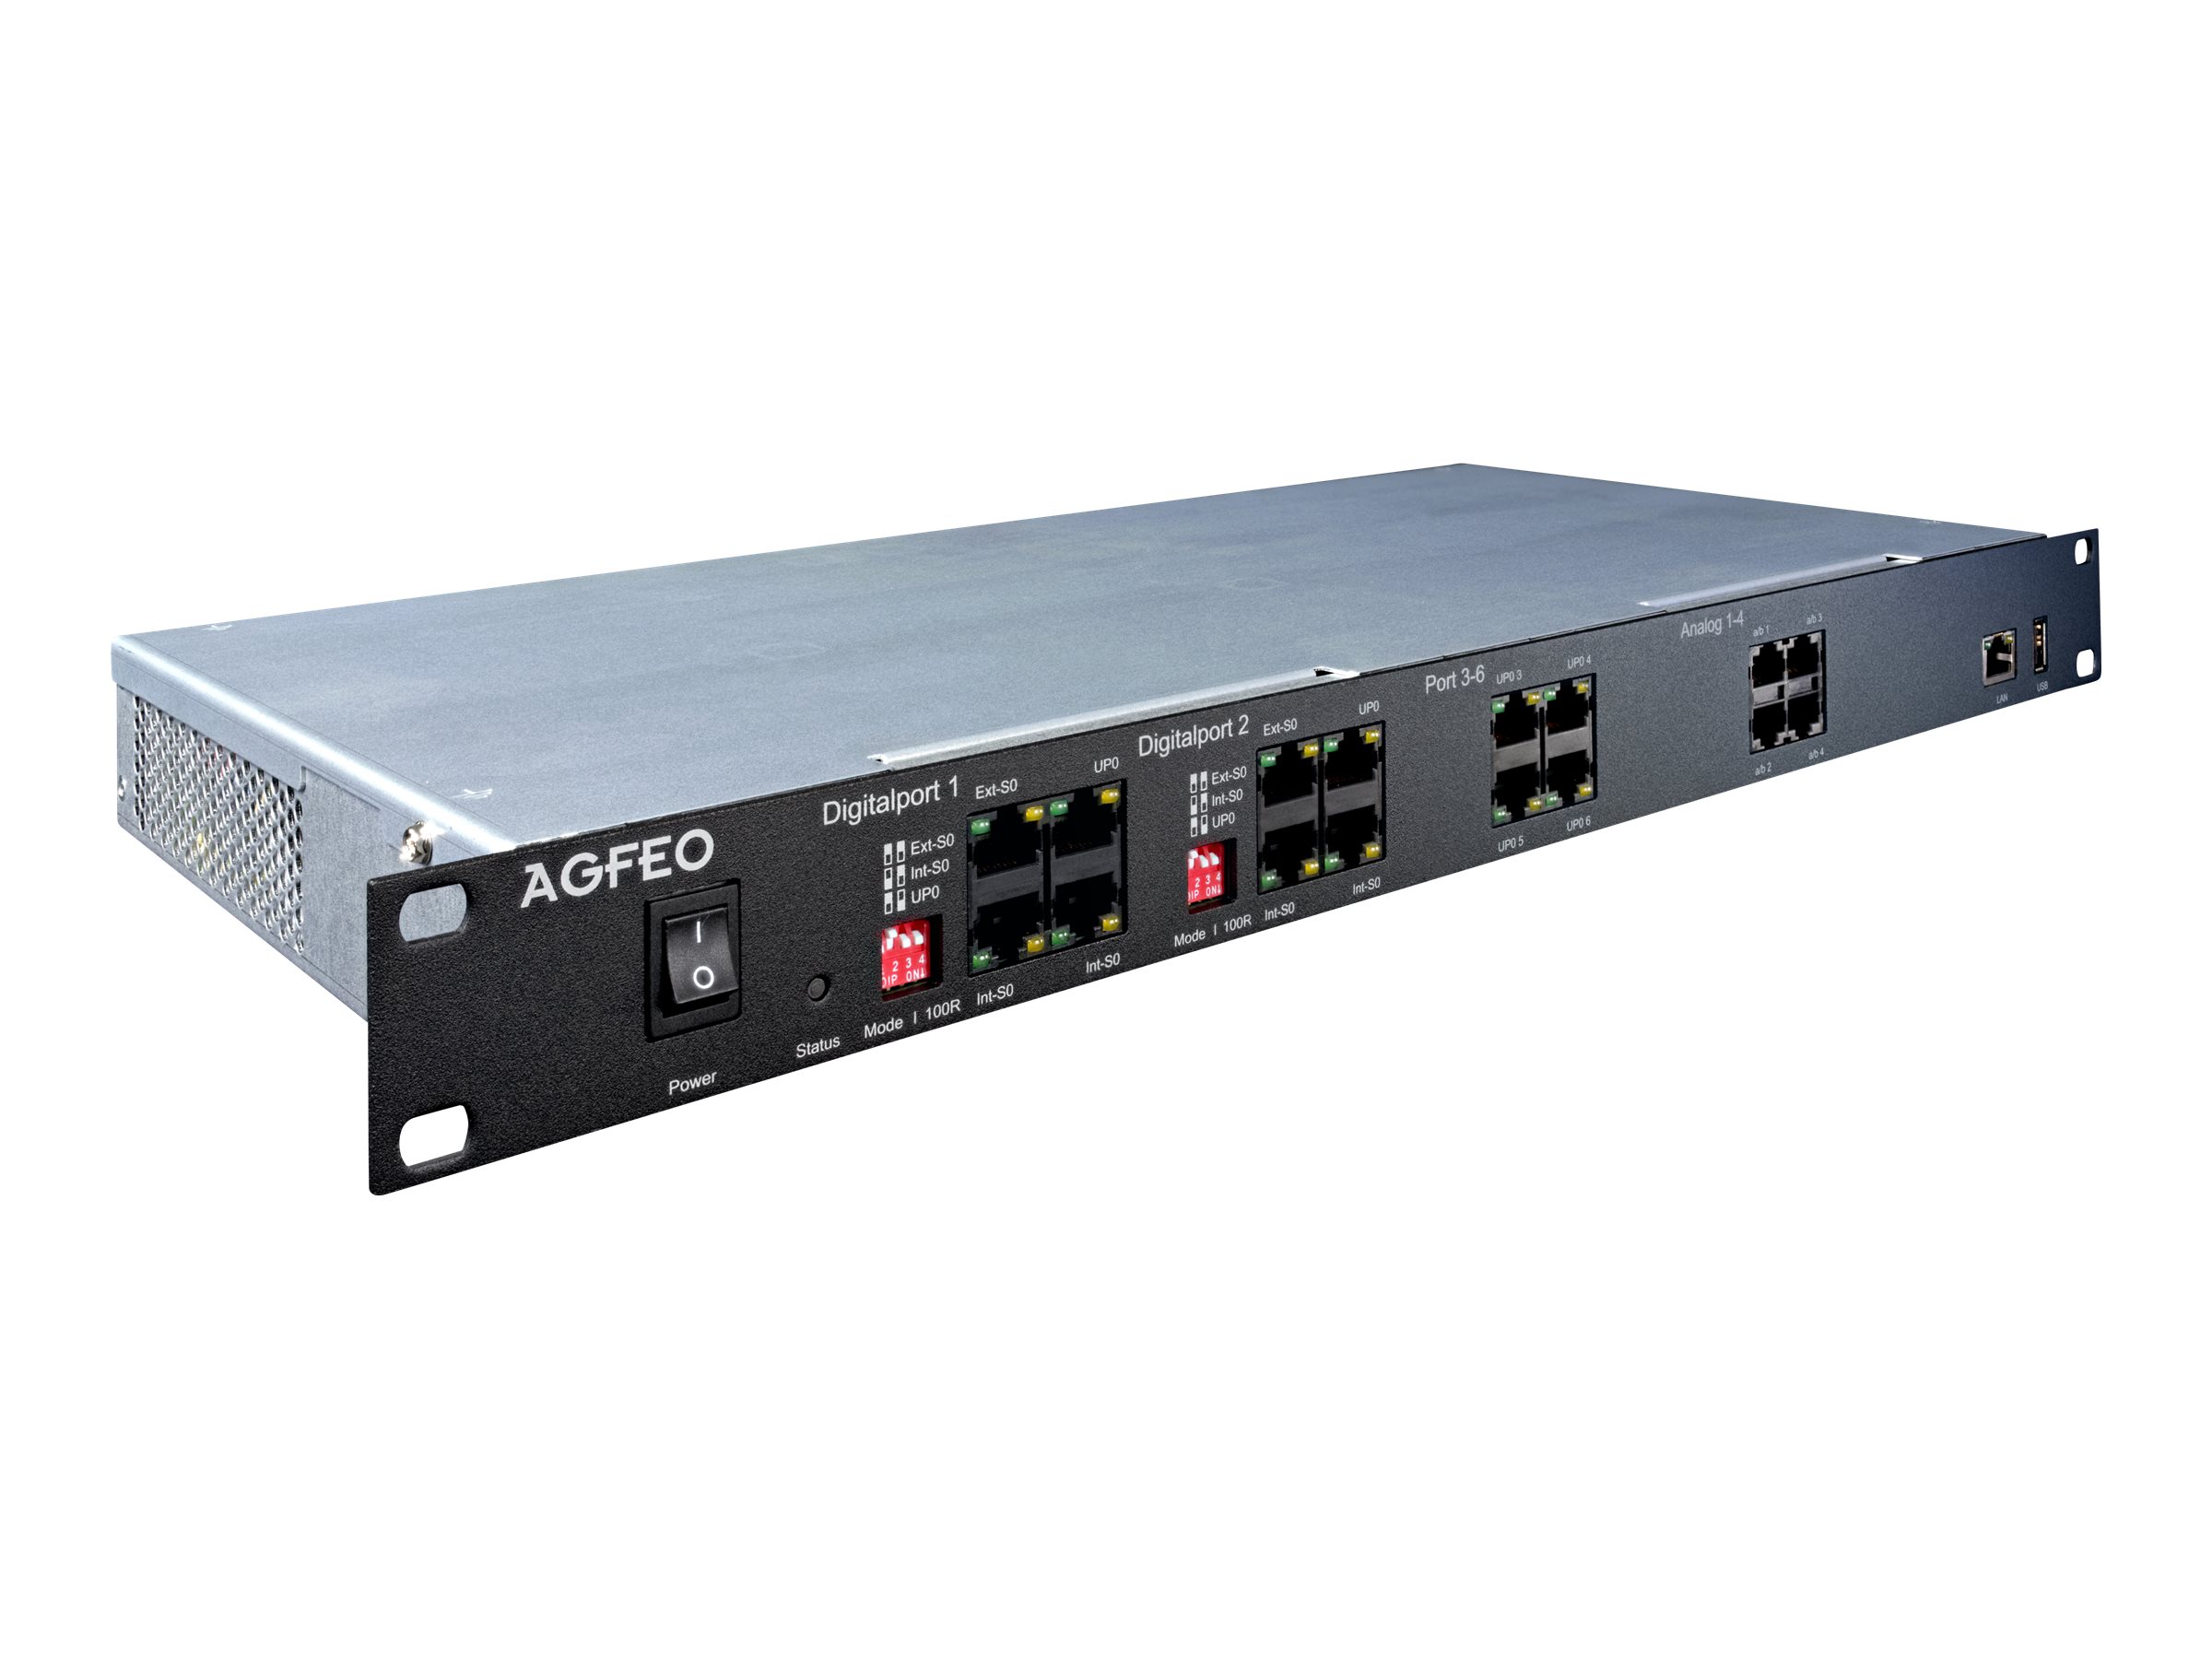 AGFEO ES 628 IT - Hybrid PBX - 1U (6101419)